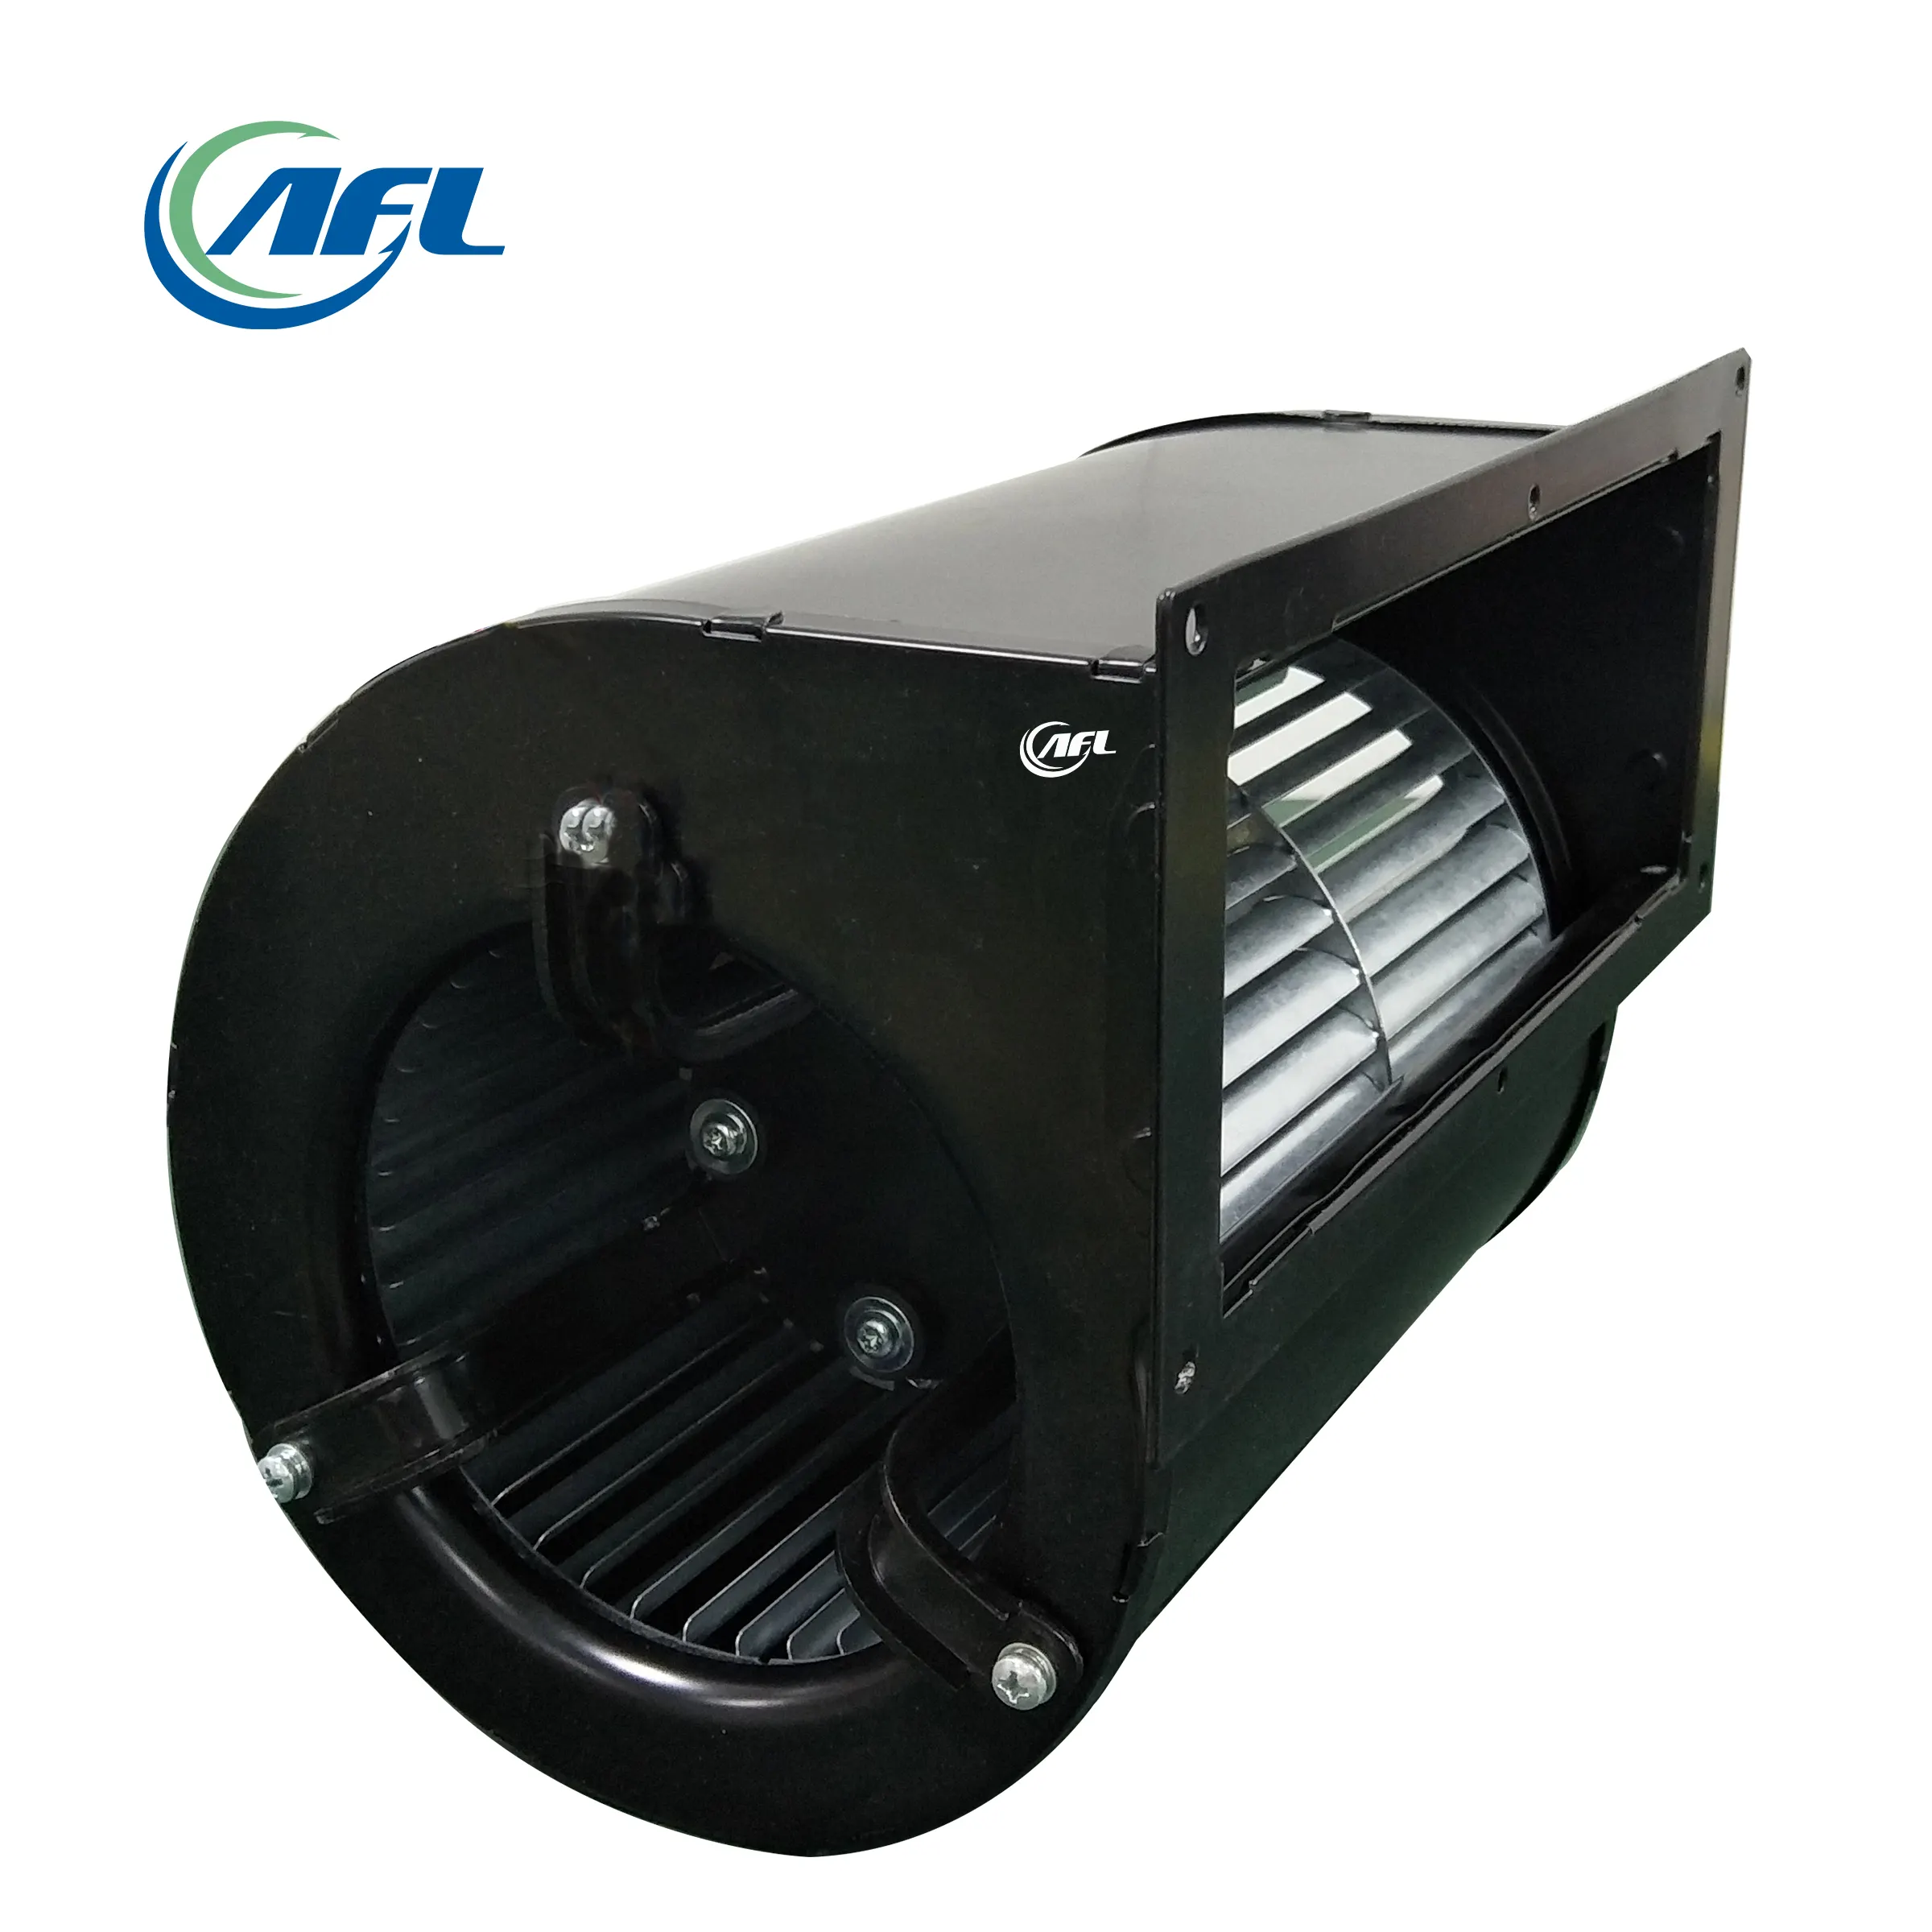 Impulsor de plástico de entrada única, ventiladores centrífugos con marco para equipos de ventilación, AFL 133mm AC/EC 220V